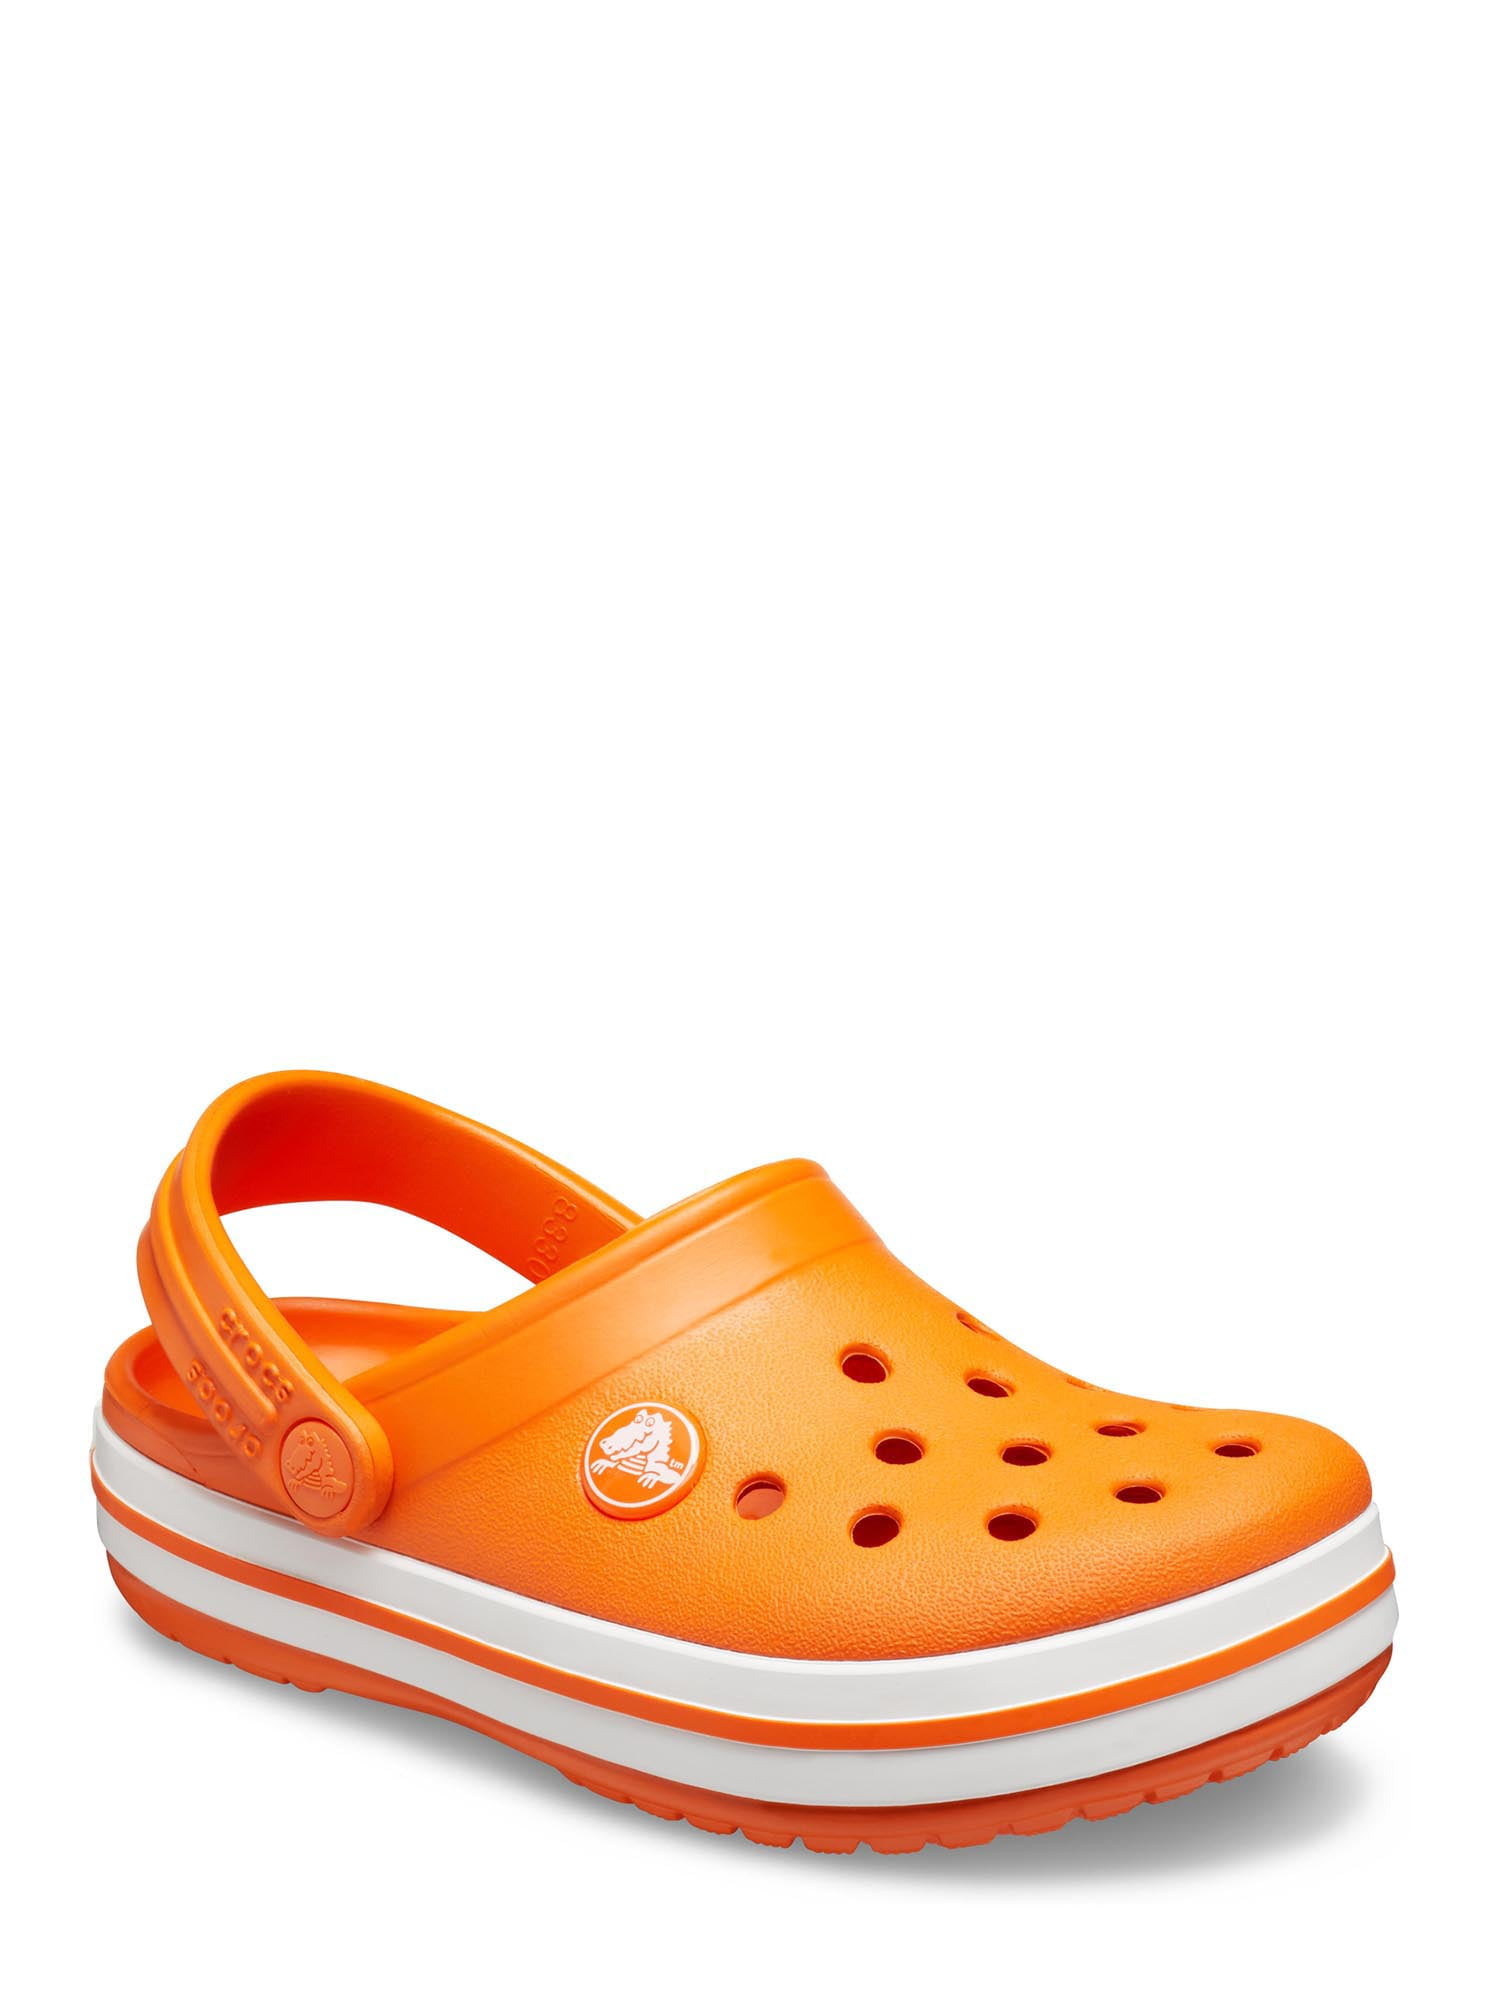 orange crocs kids